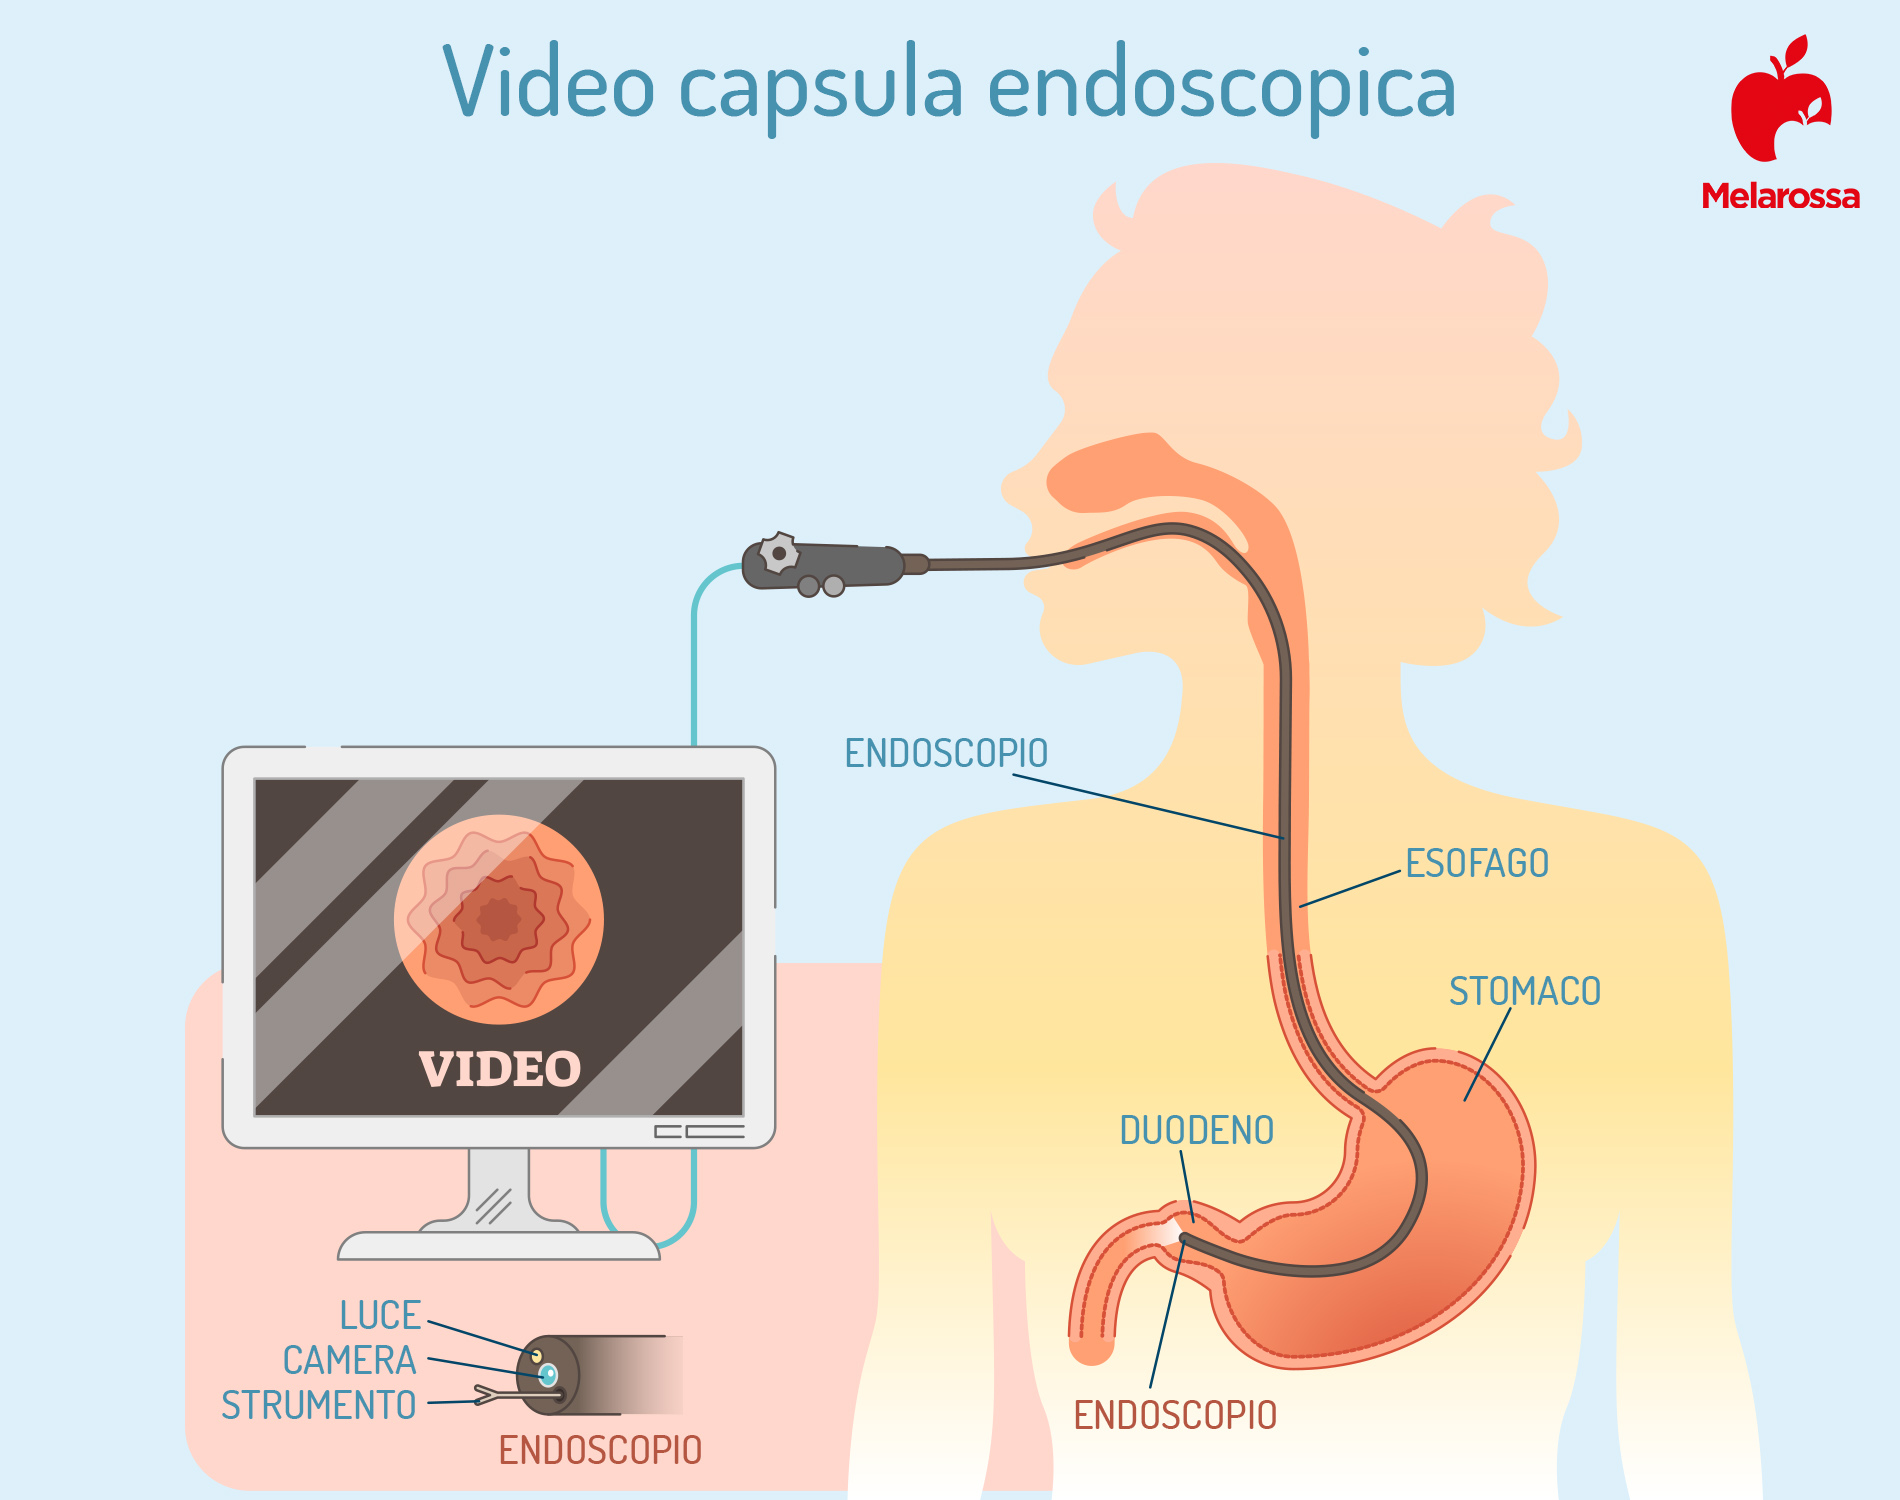 gastroscopia: video capsula endoscopia